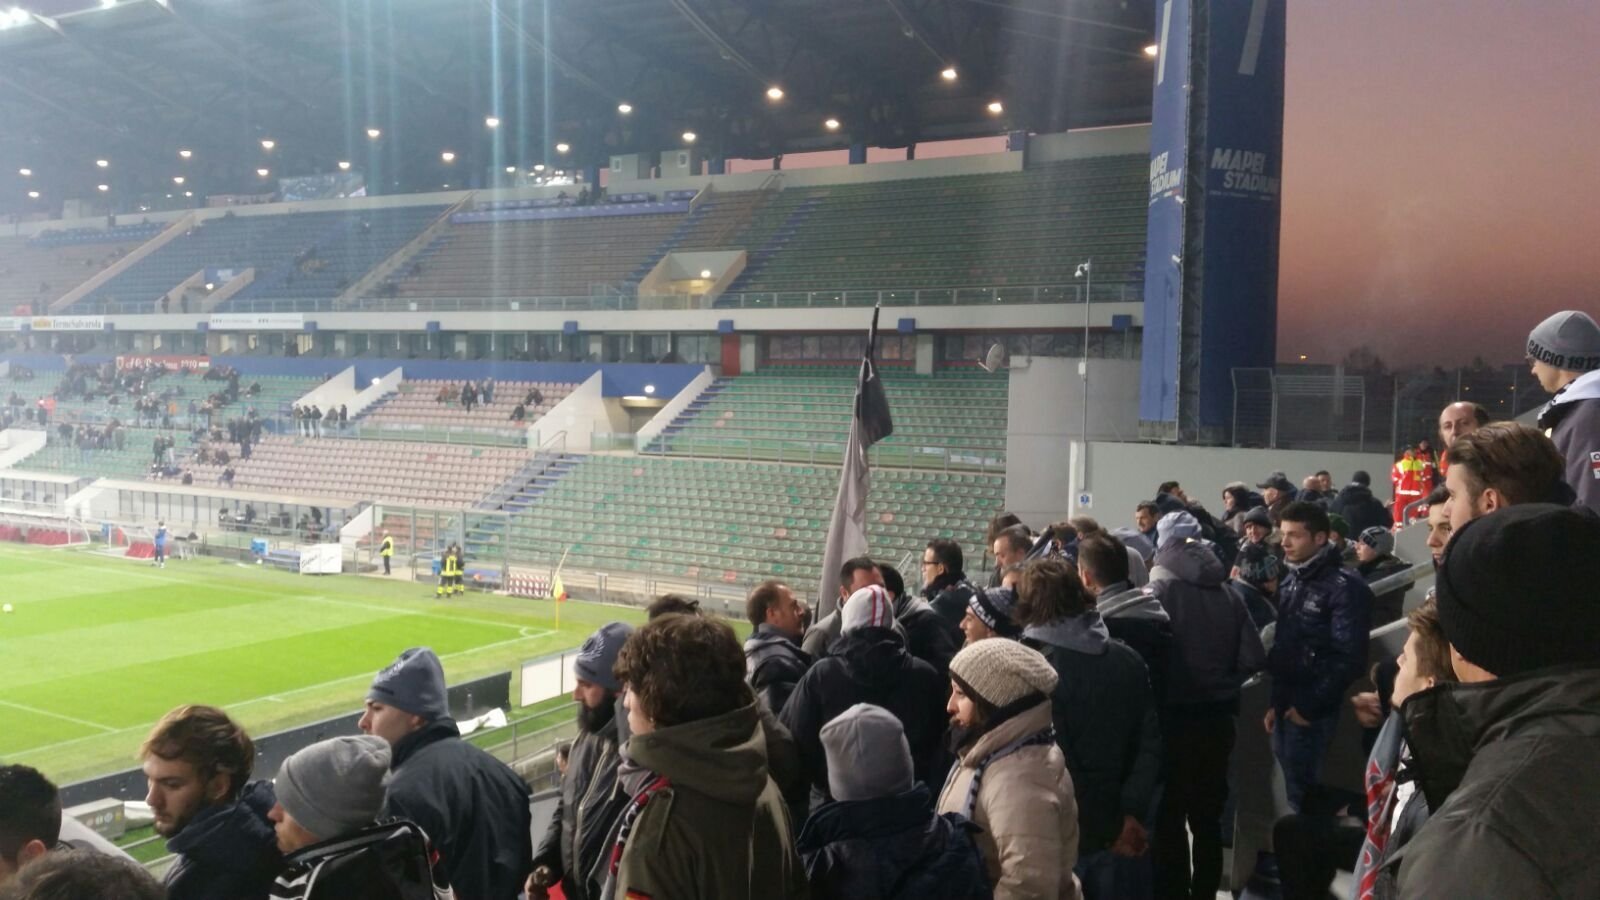 FINALE Reggiana – Alessandria 1-1 (Marras, Mogos)